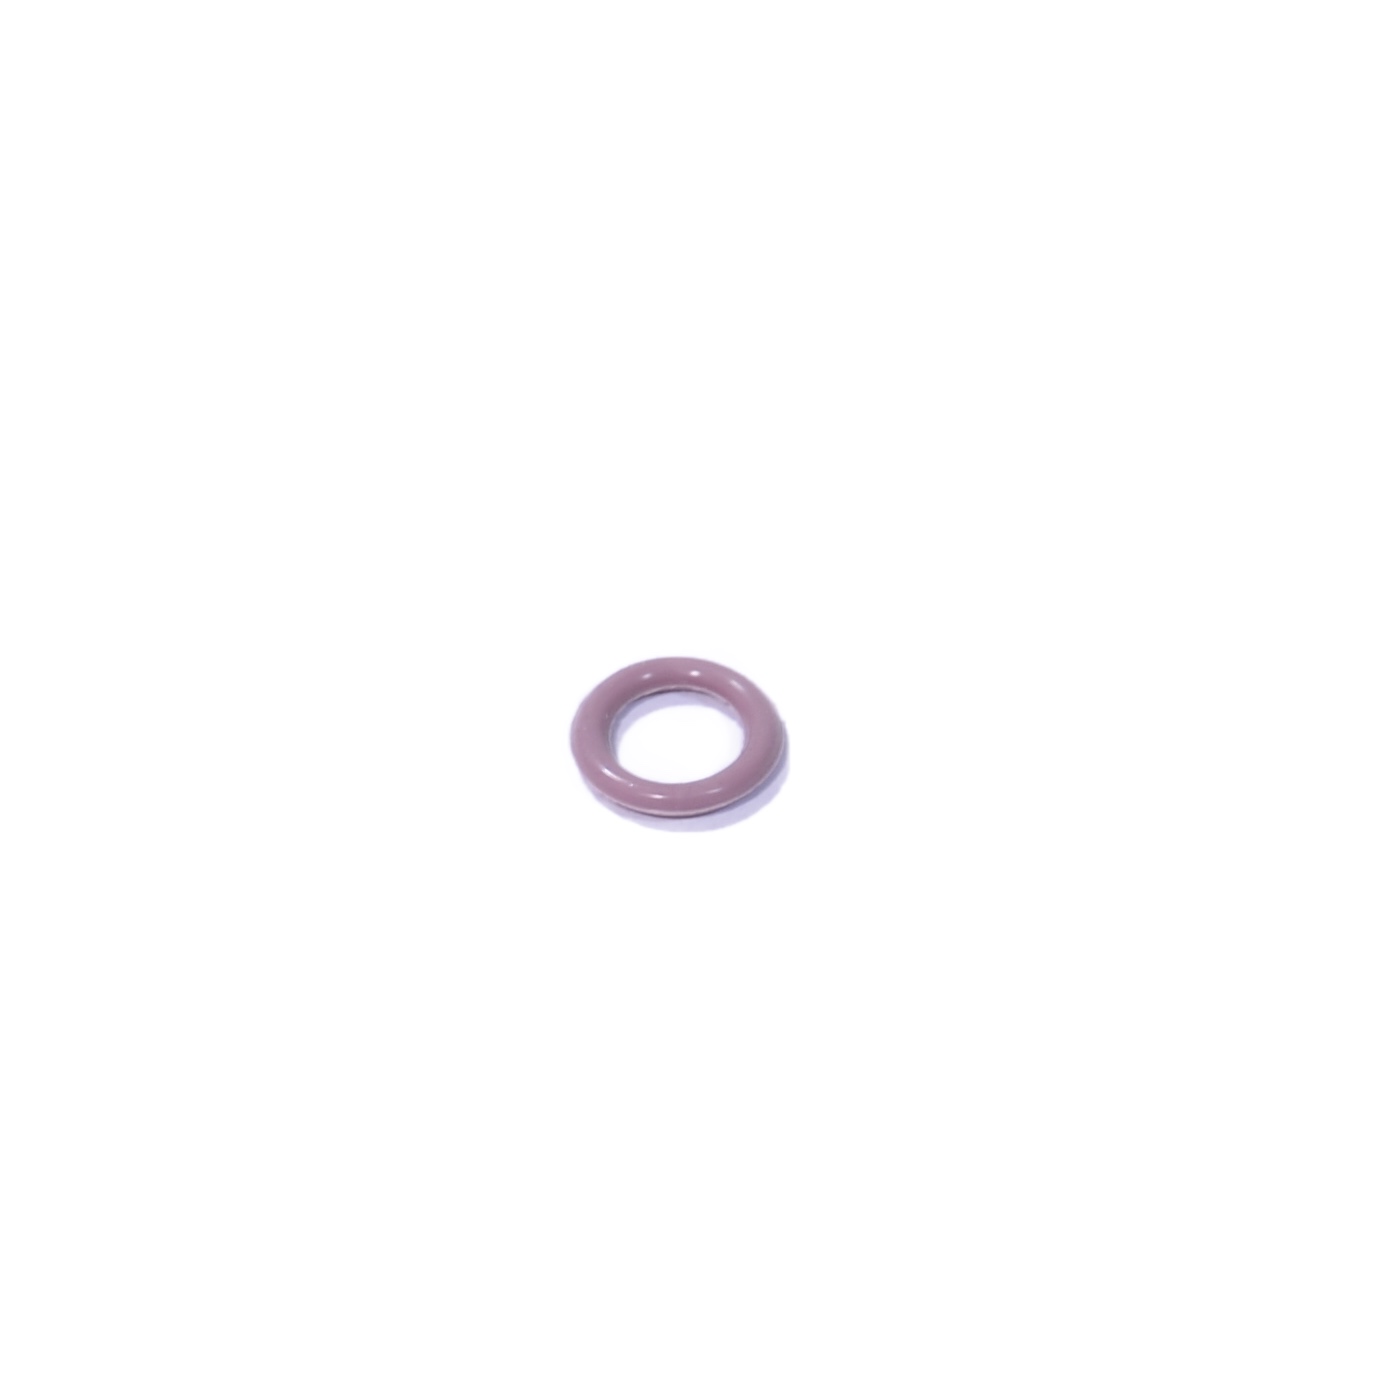 Кольцо уплотнительное топливной форсунки suzuki (7,8х1,9) коричневый fmvq (15710-09300) - ПТП64 PTP023773